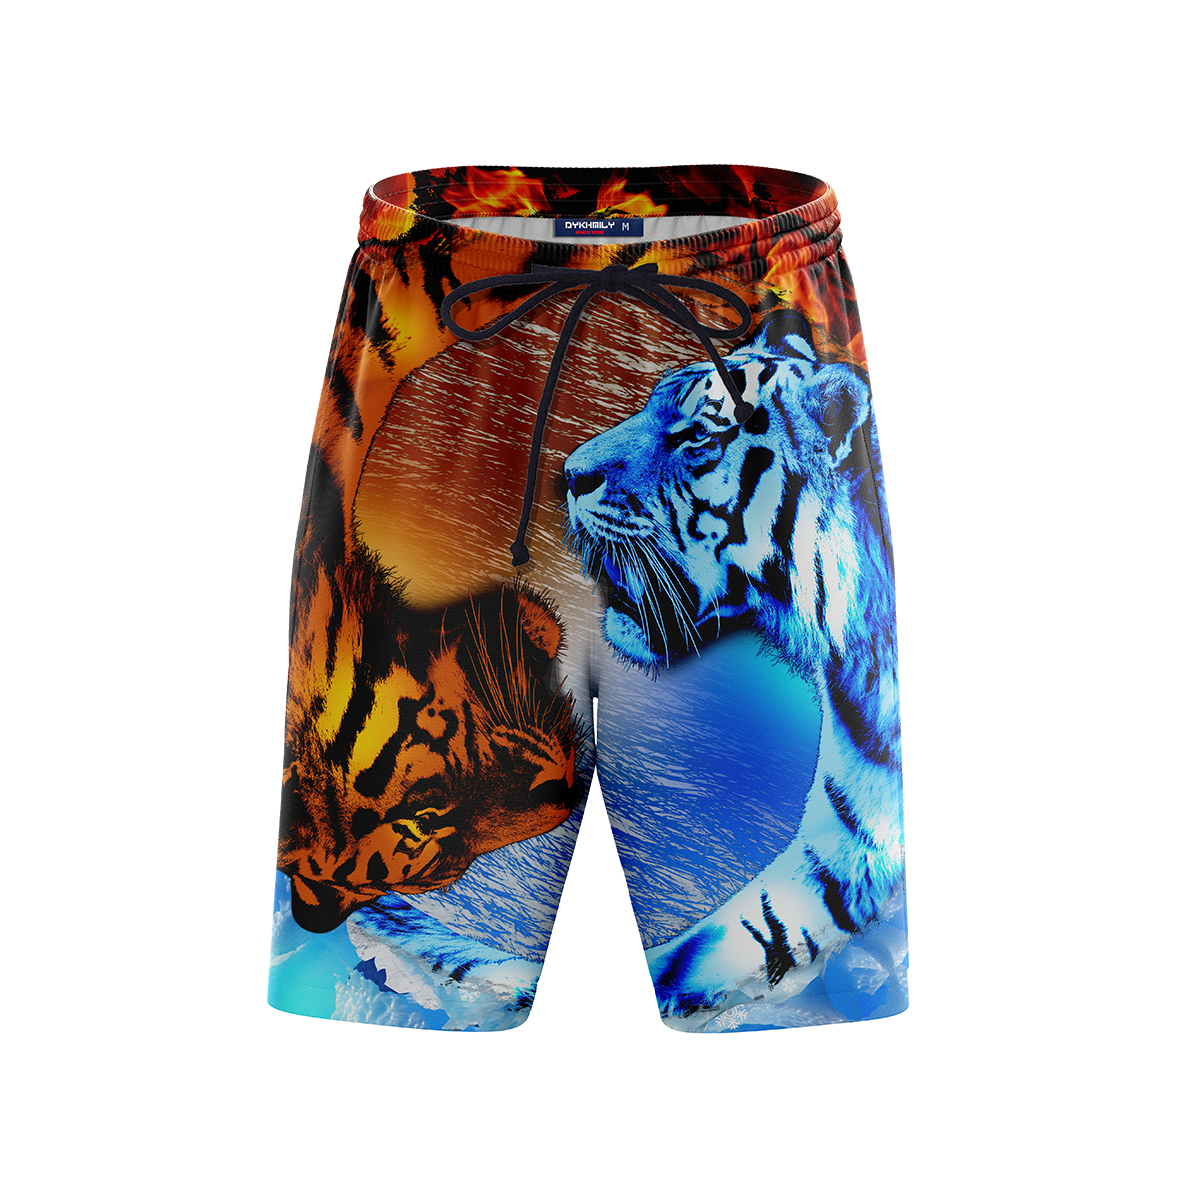 Yin Yang Fire & Ice Tiger Beach Shorts Short